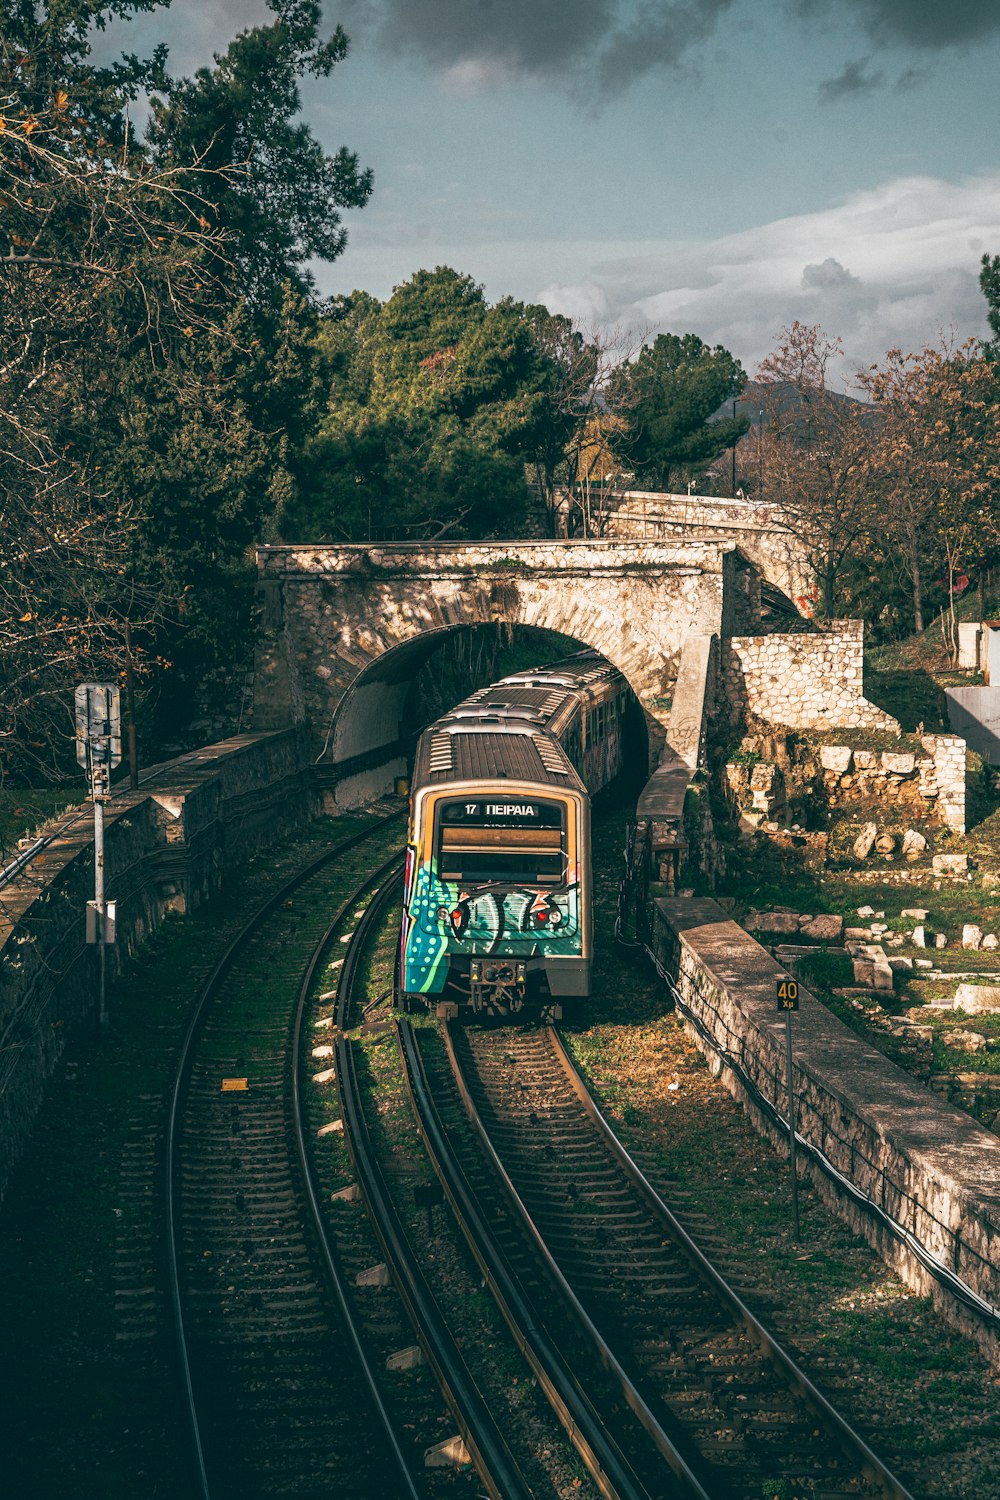 a train traveling through a tunnel under a bridge